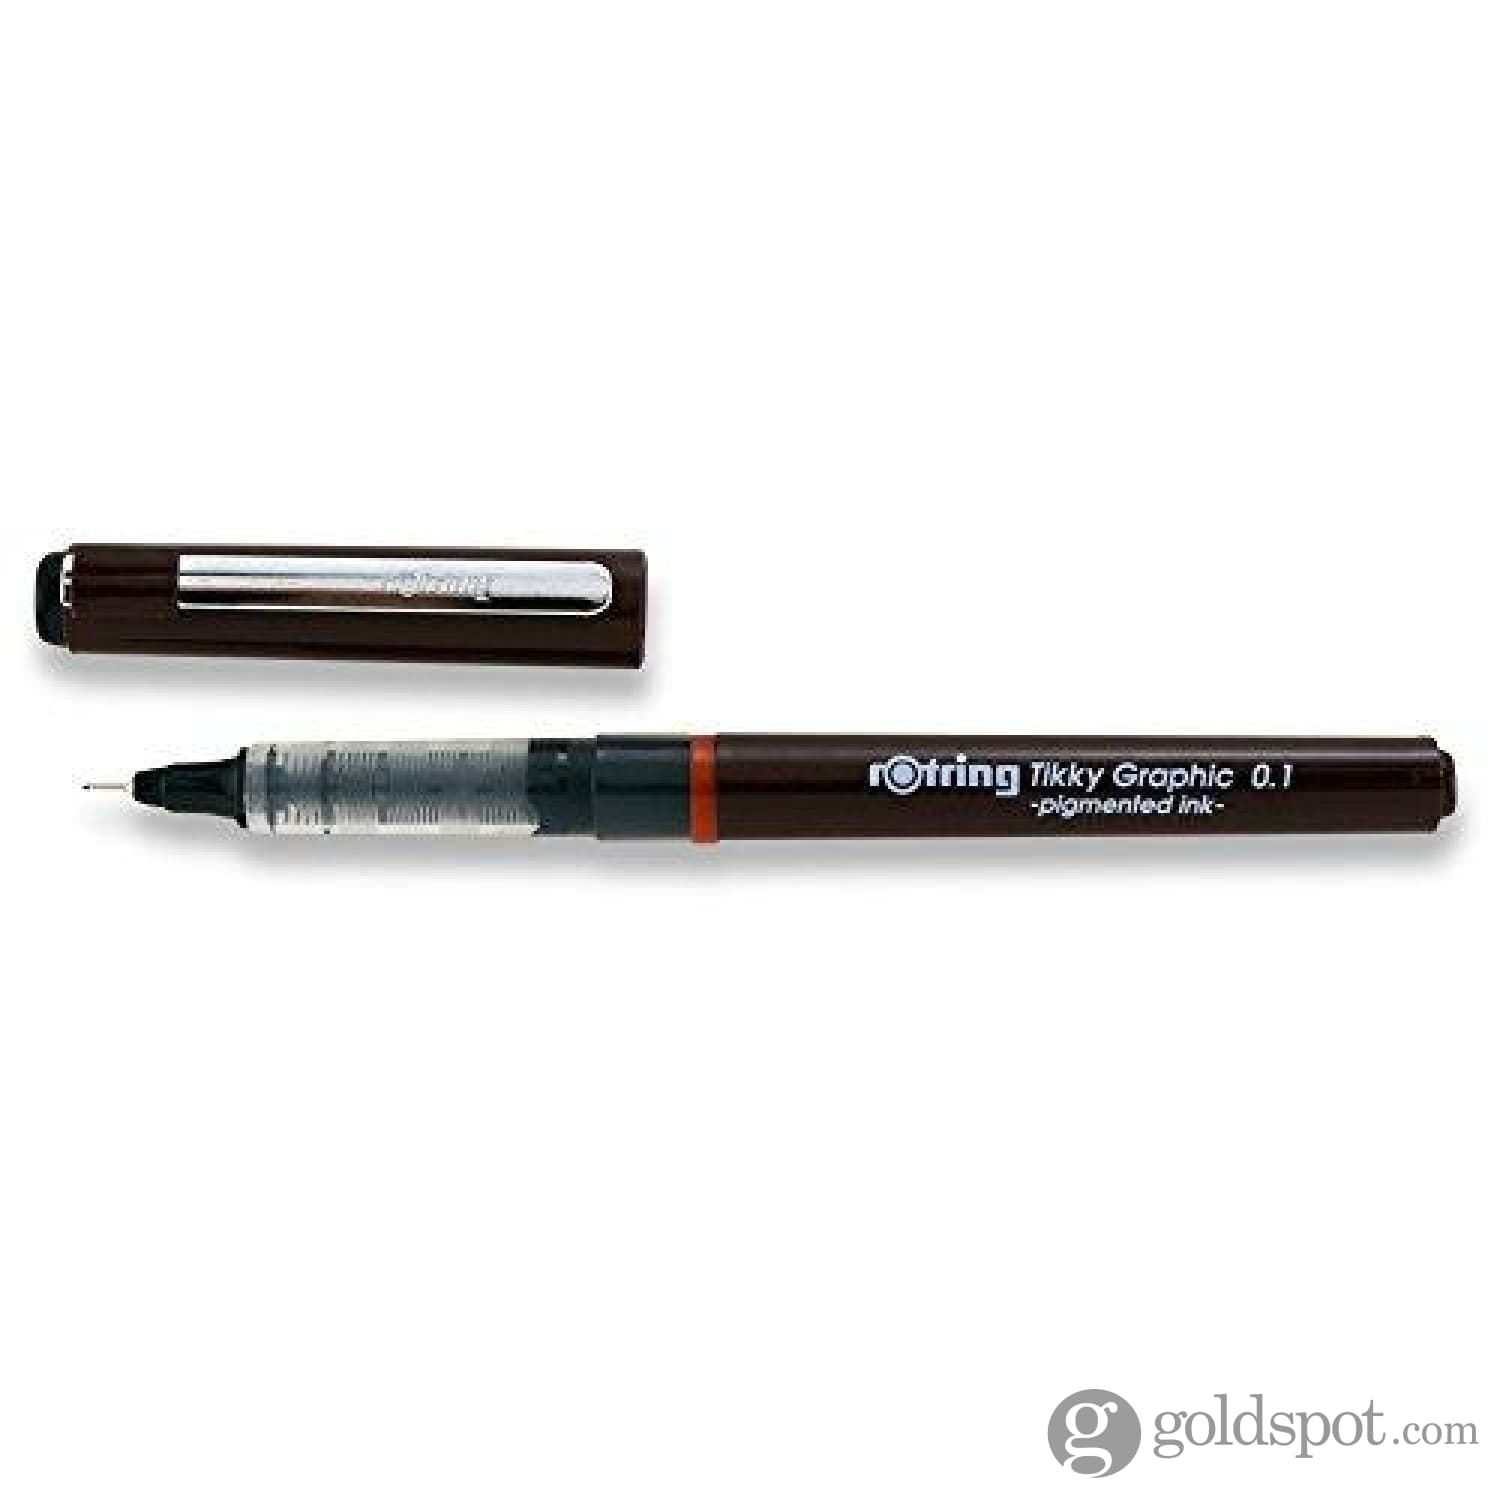 https://goldspot.com/cdn/shop/products/rotring-tikky-graphic-fineliner-fiber-tip-pen-0-1mm_403.jpg?v=1620421015